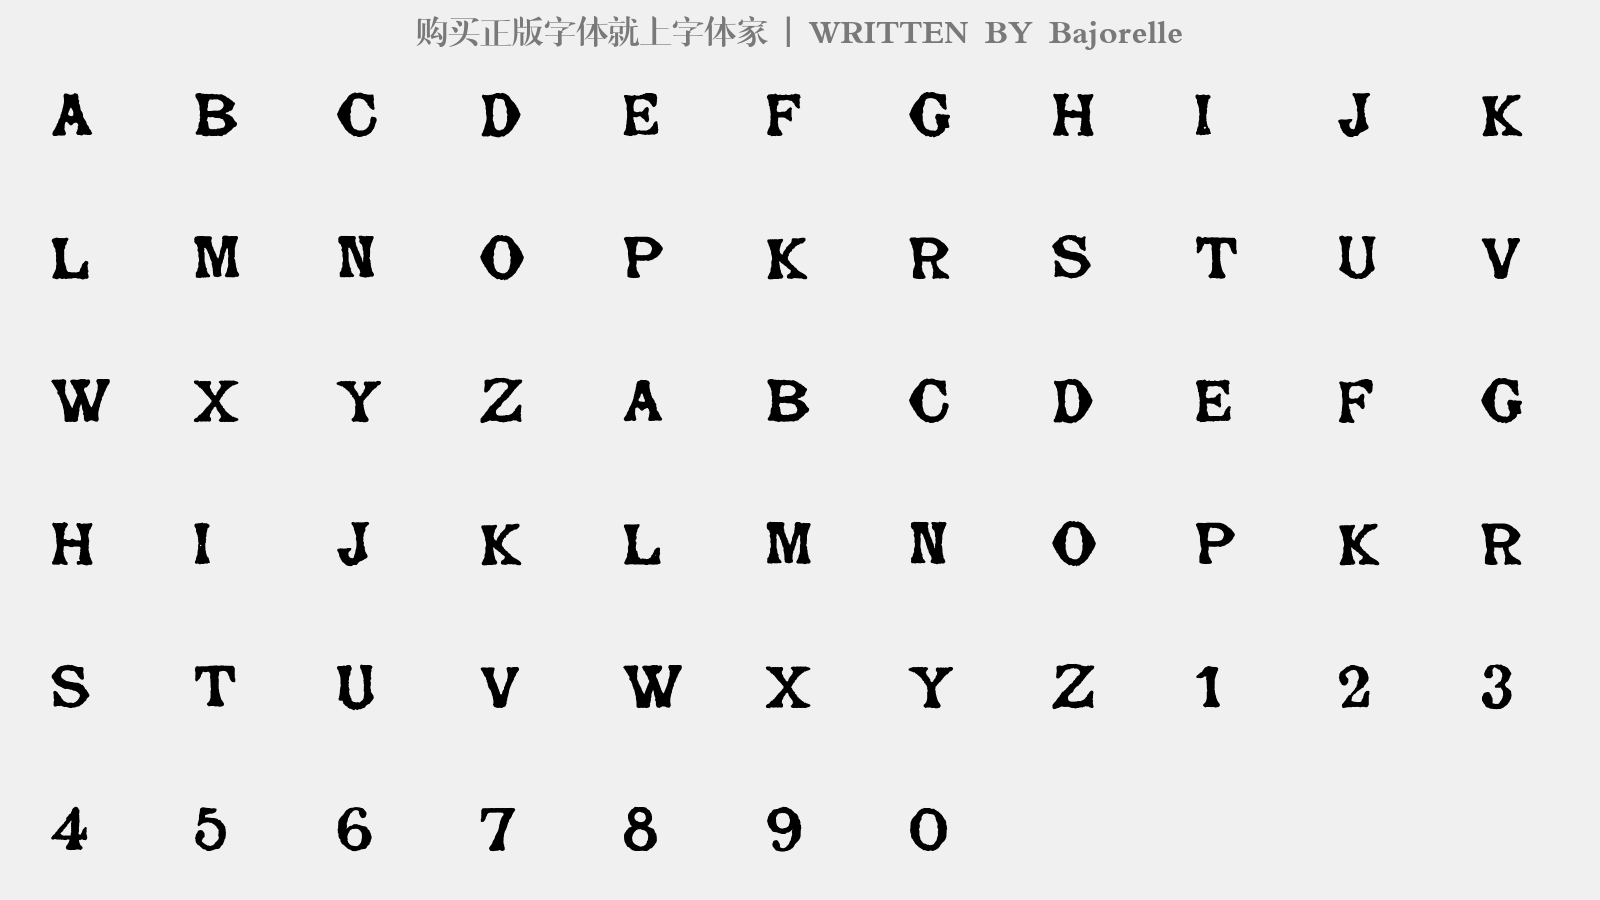 Bajorelle - 大写字母/小写字母/数字